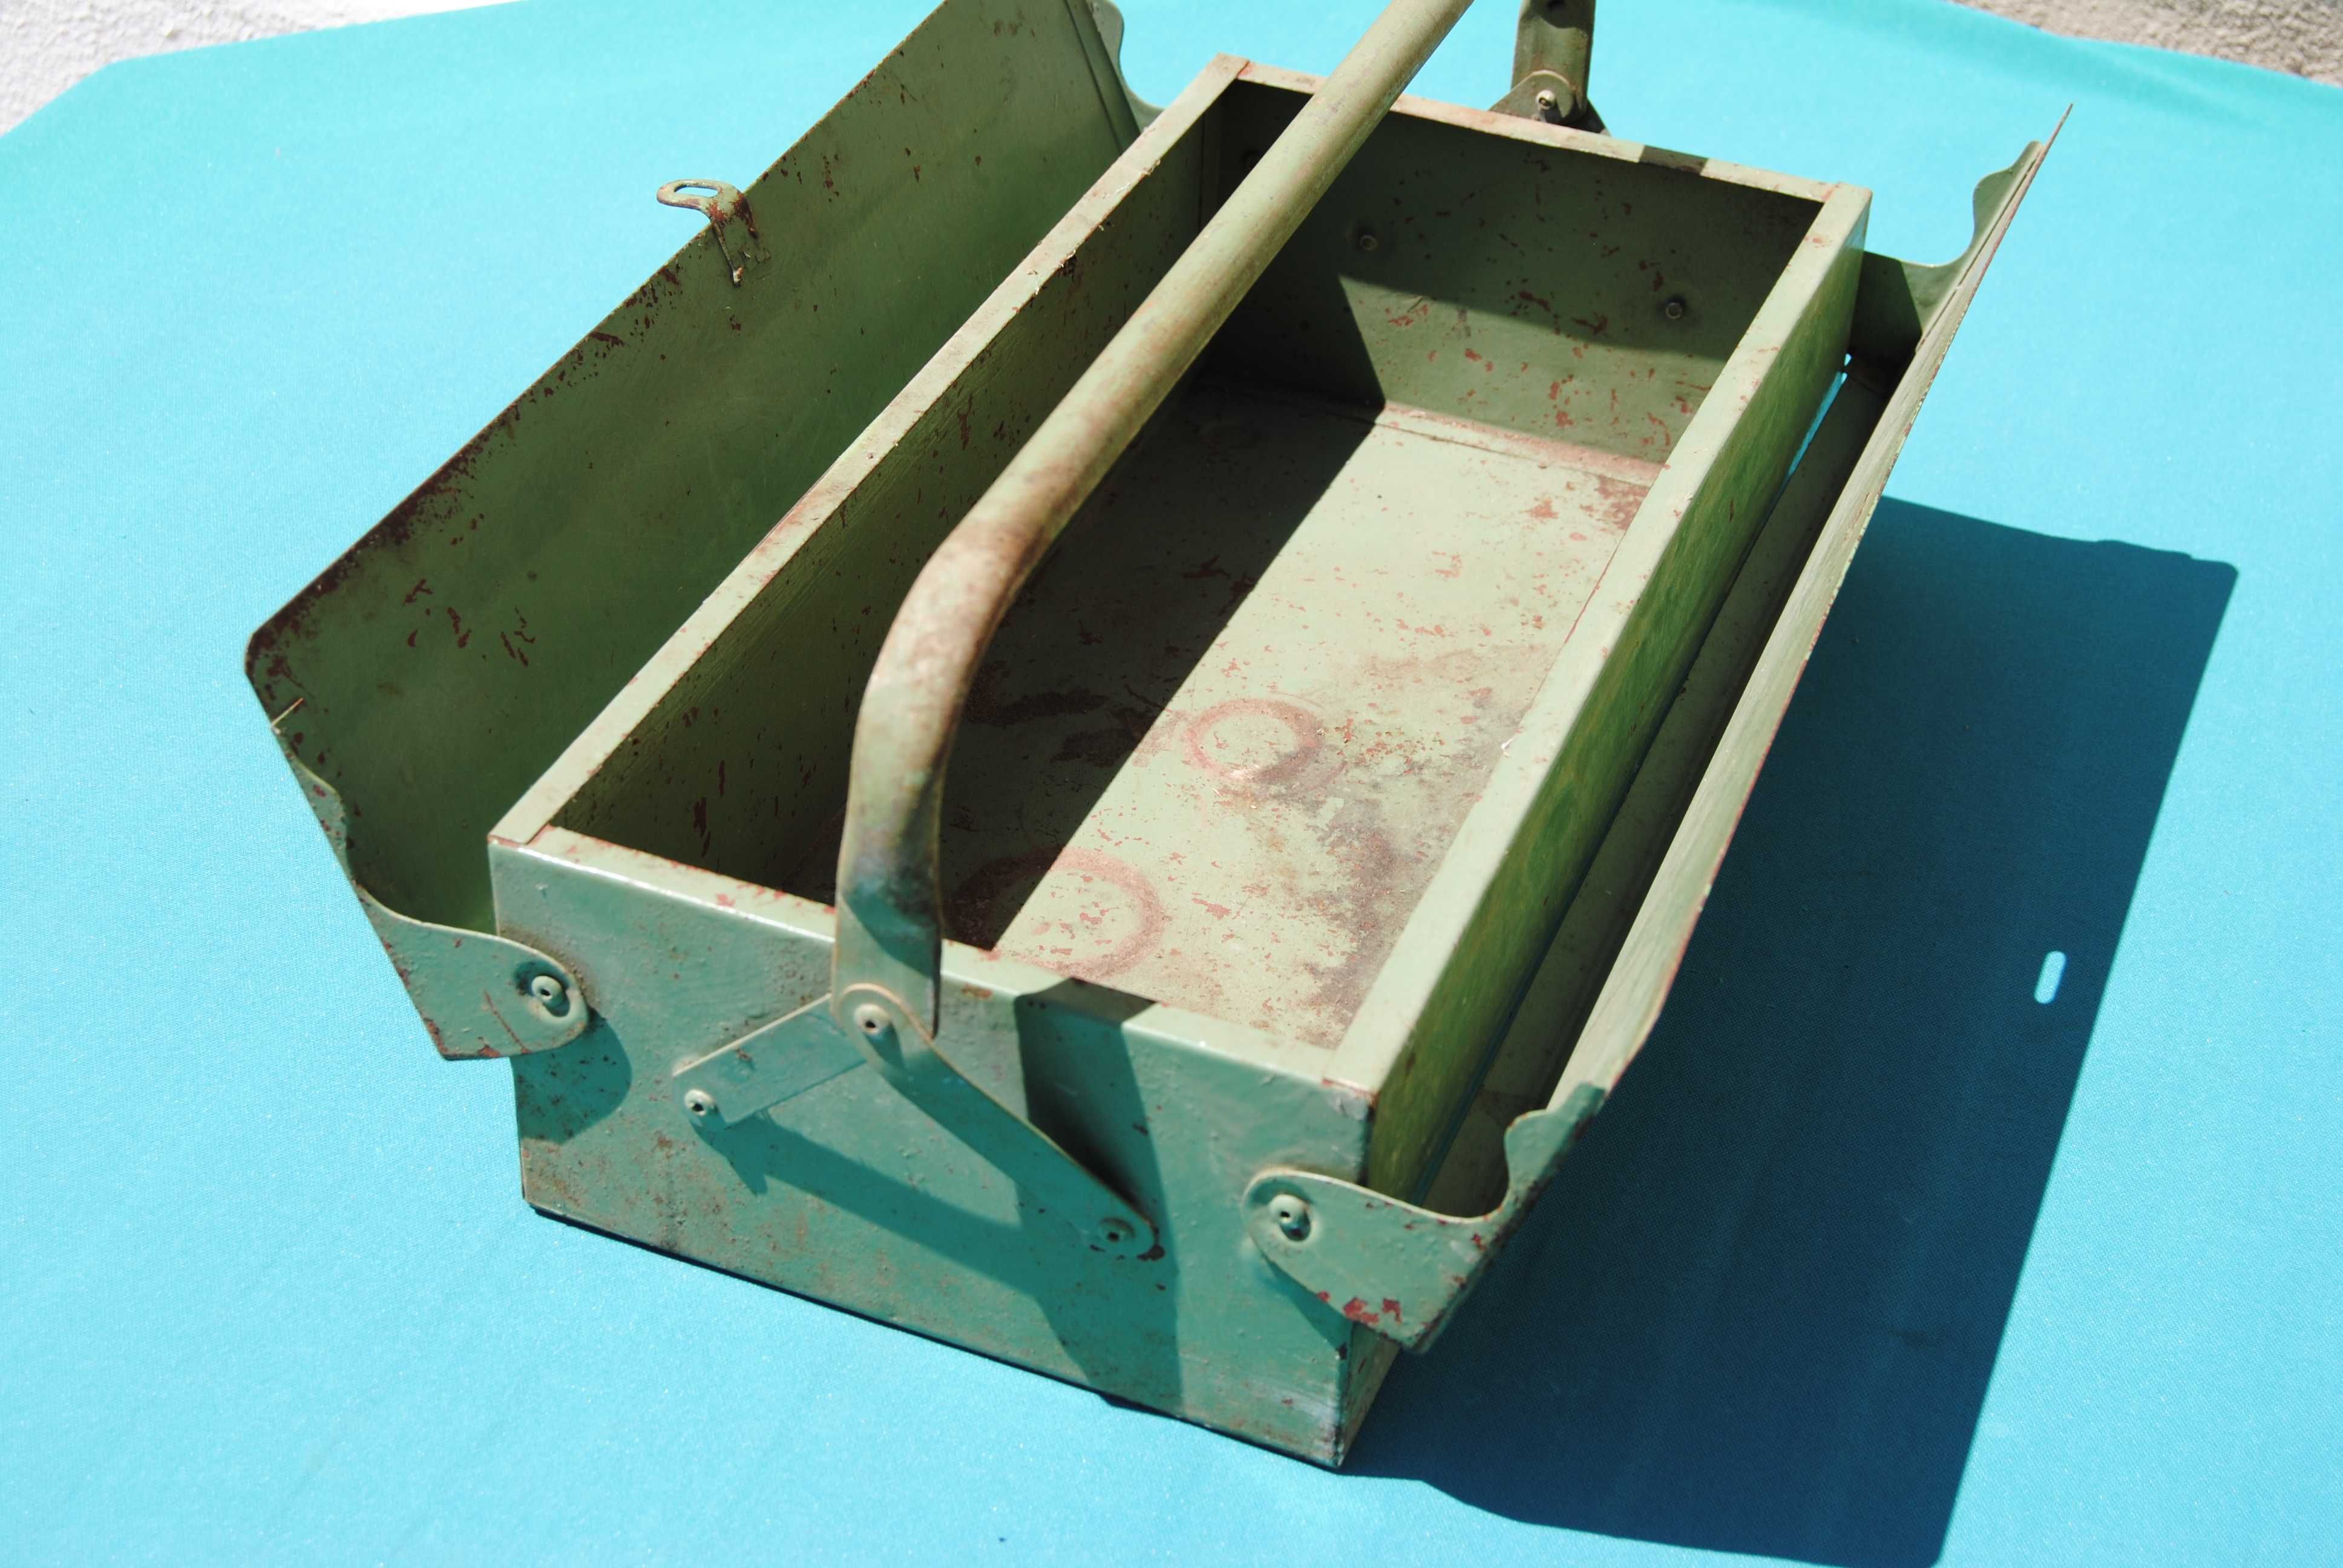 Caixa de ferramentas antiga em ferro pintada em verde - vintage